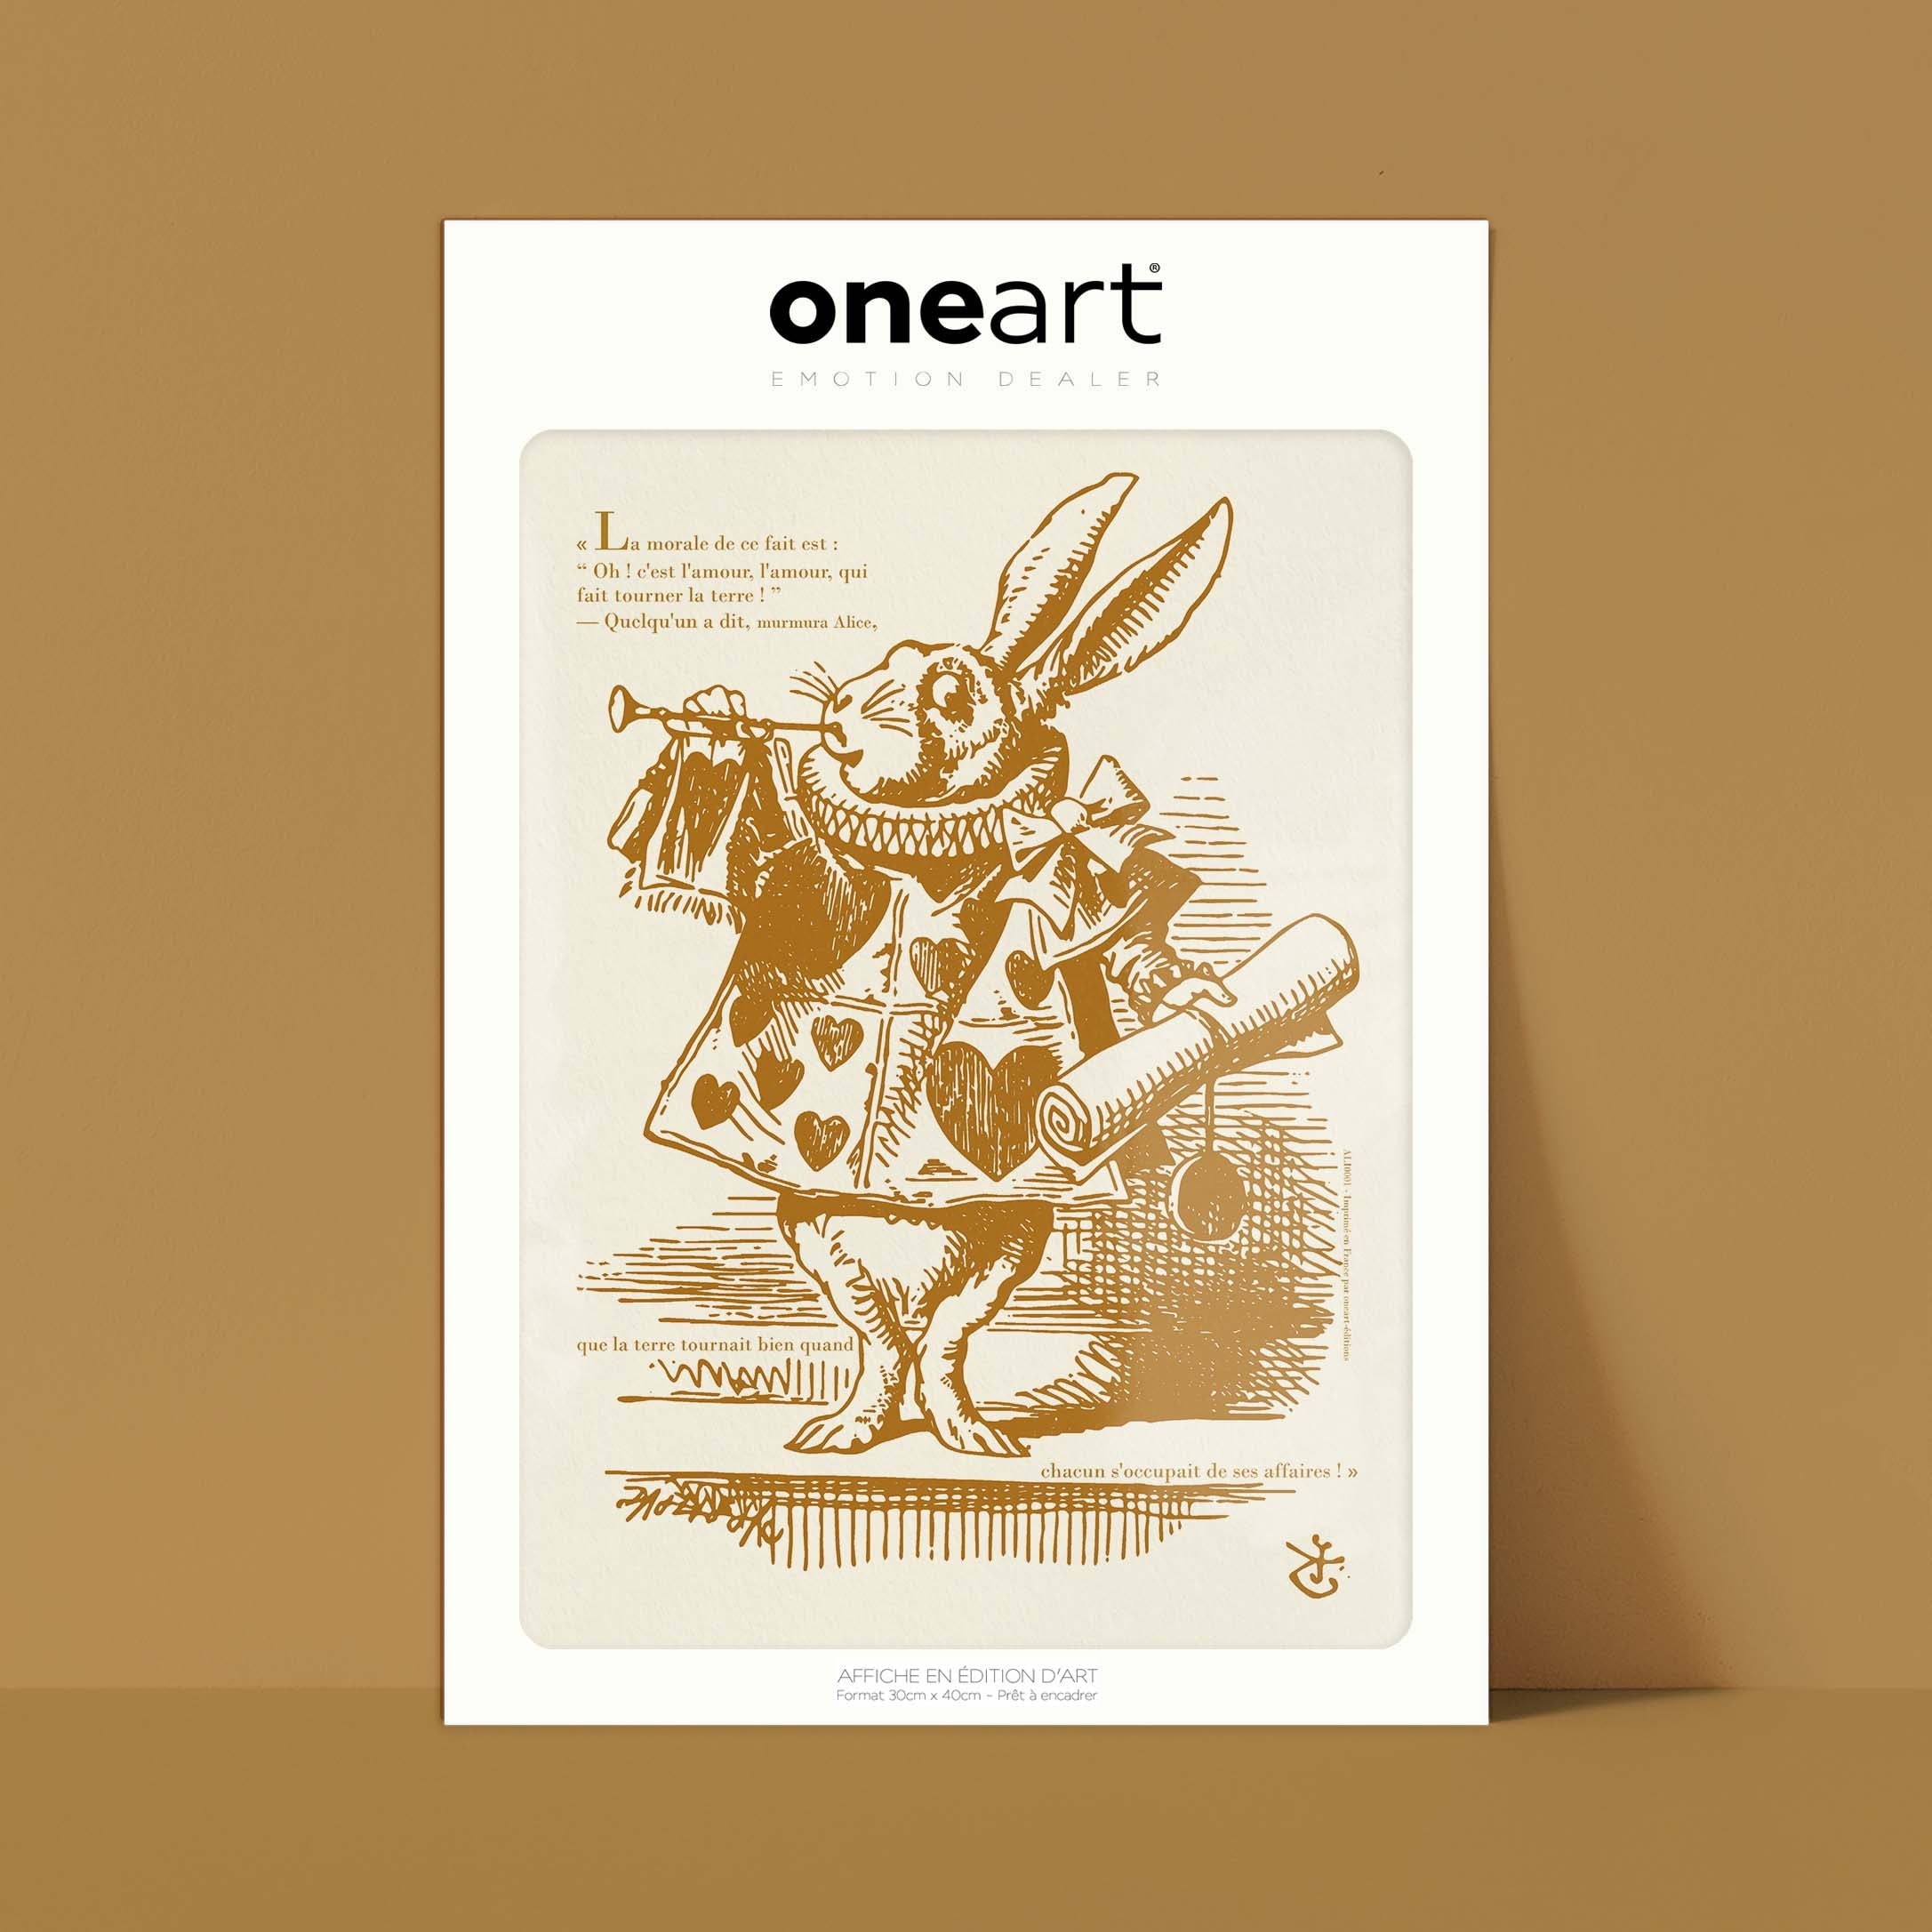 Affiche Alice - Le lapin blanc, habillé en hérault, souffle dans une trompette-oneart.fr